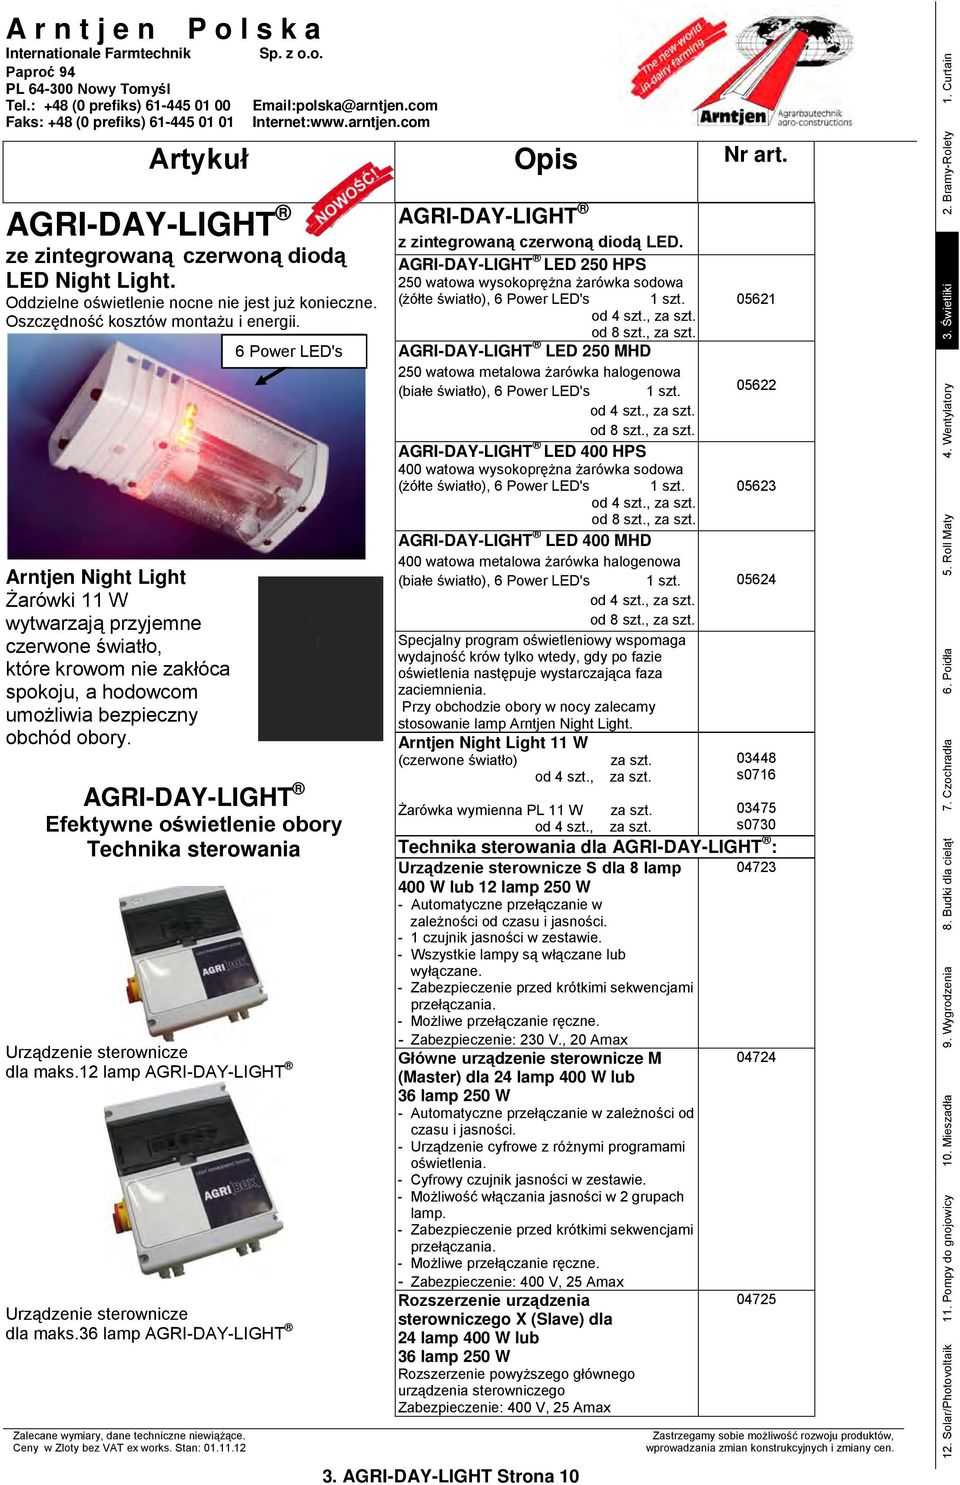 6 Power LED's AGRI-DAY-LIGHT Efektywne oświetlenie obory Technika sterowania Urządzenie sterownicze dla maks.12 lamp AGRI-DAY-LIGHT Urządzenie sterownicze dla maks.